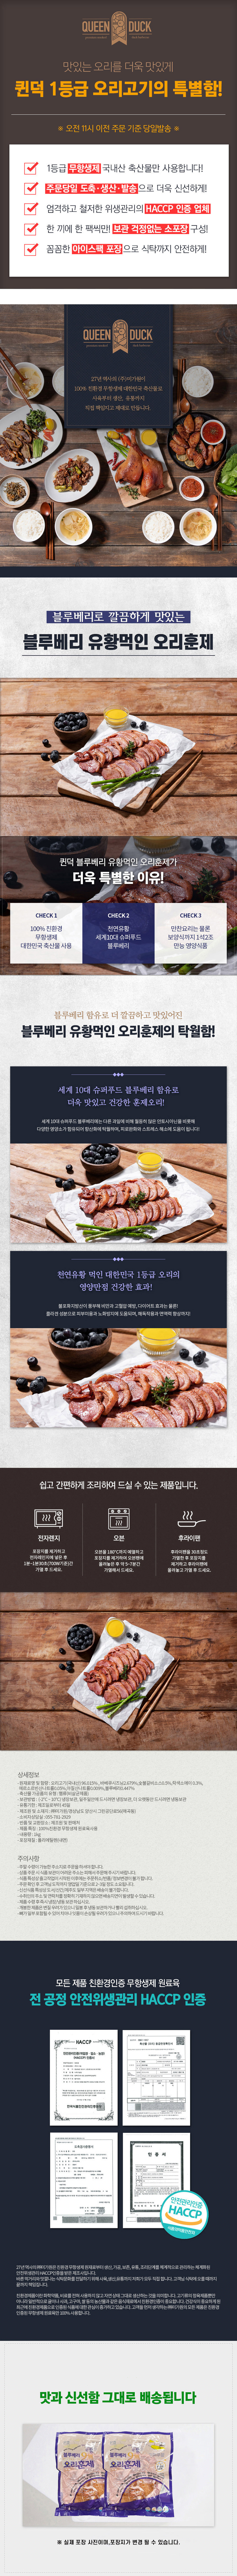 [순천로컬푸드_정육] 국내산 블루베리 먹인 오리훈제 1kg